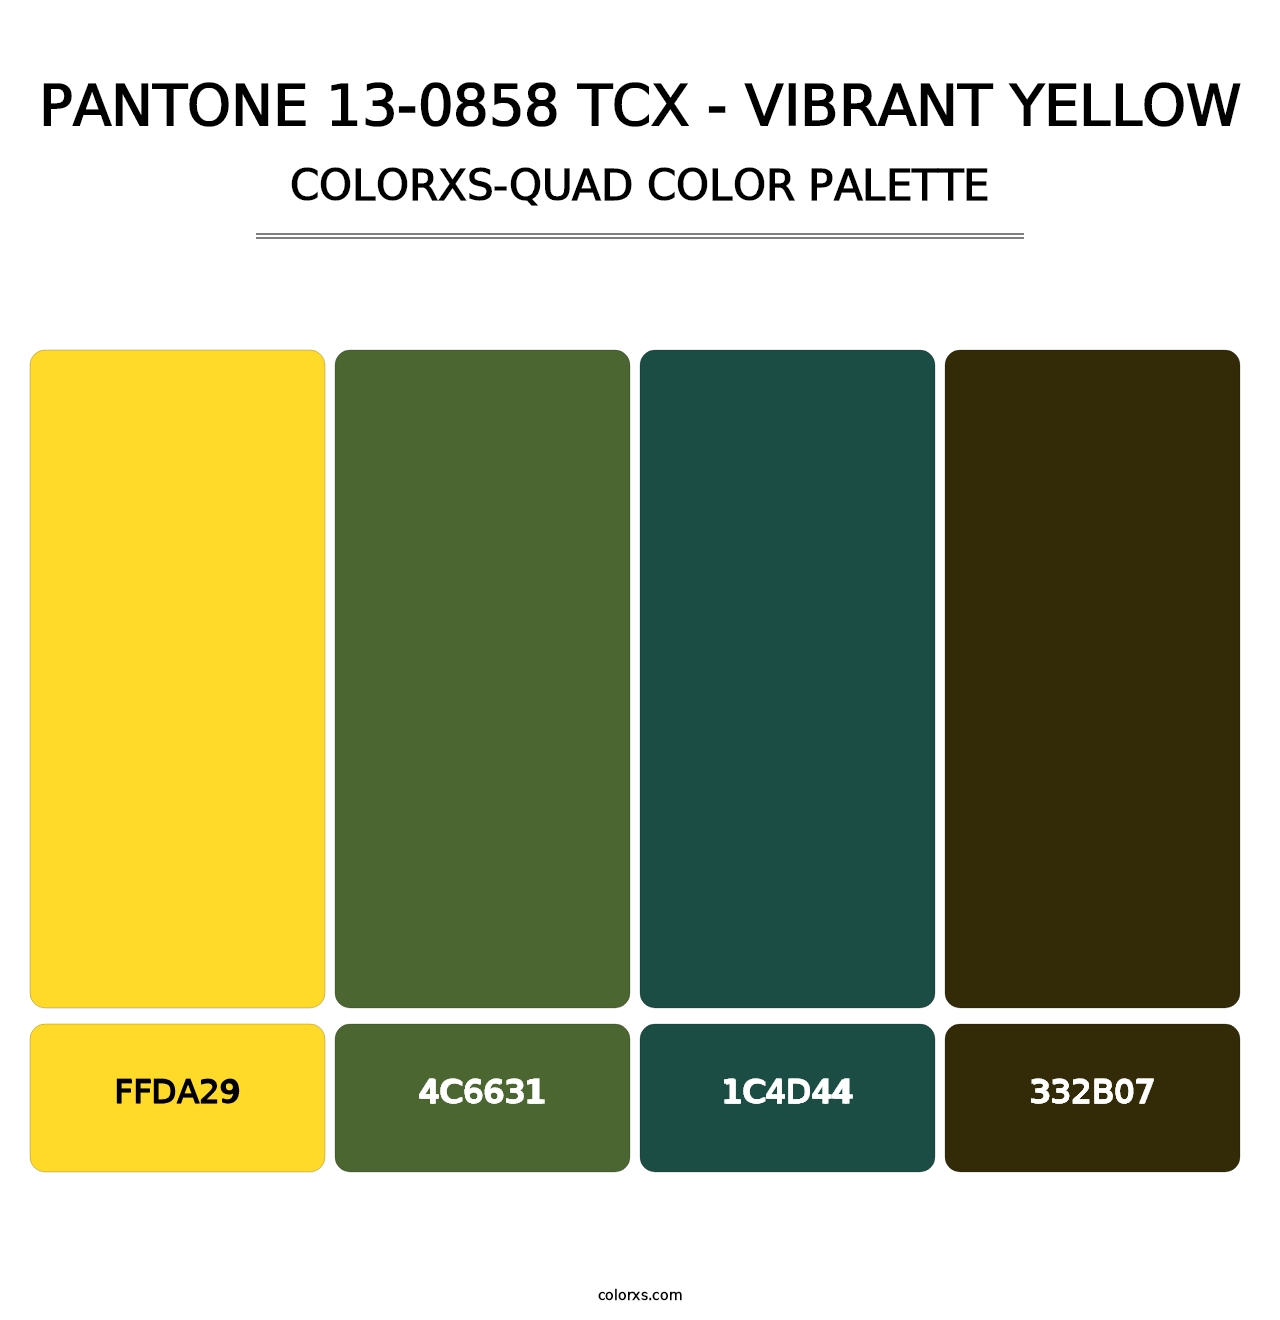 PANTONE 13-0858 TCX - Vibrant Yellow - Colorxs Quad Palette